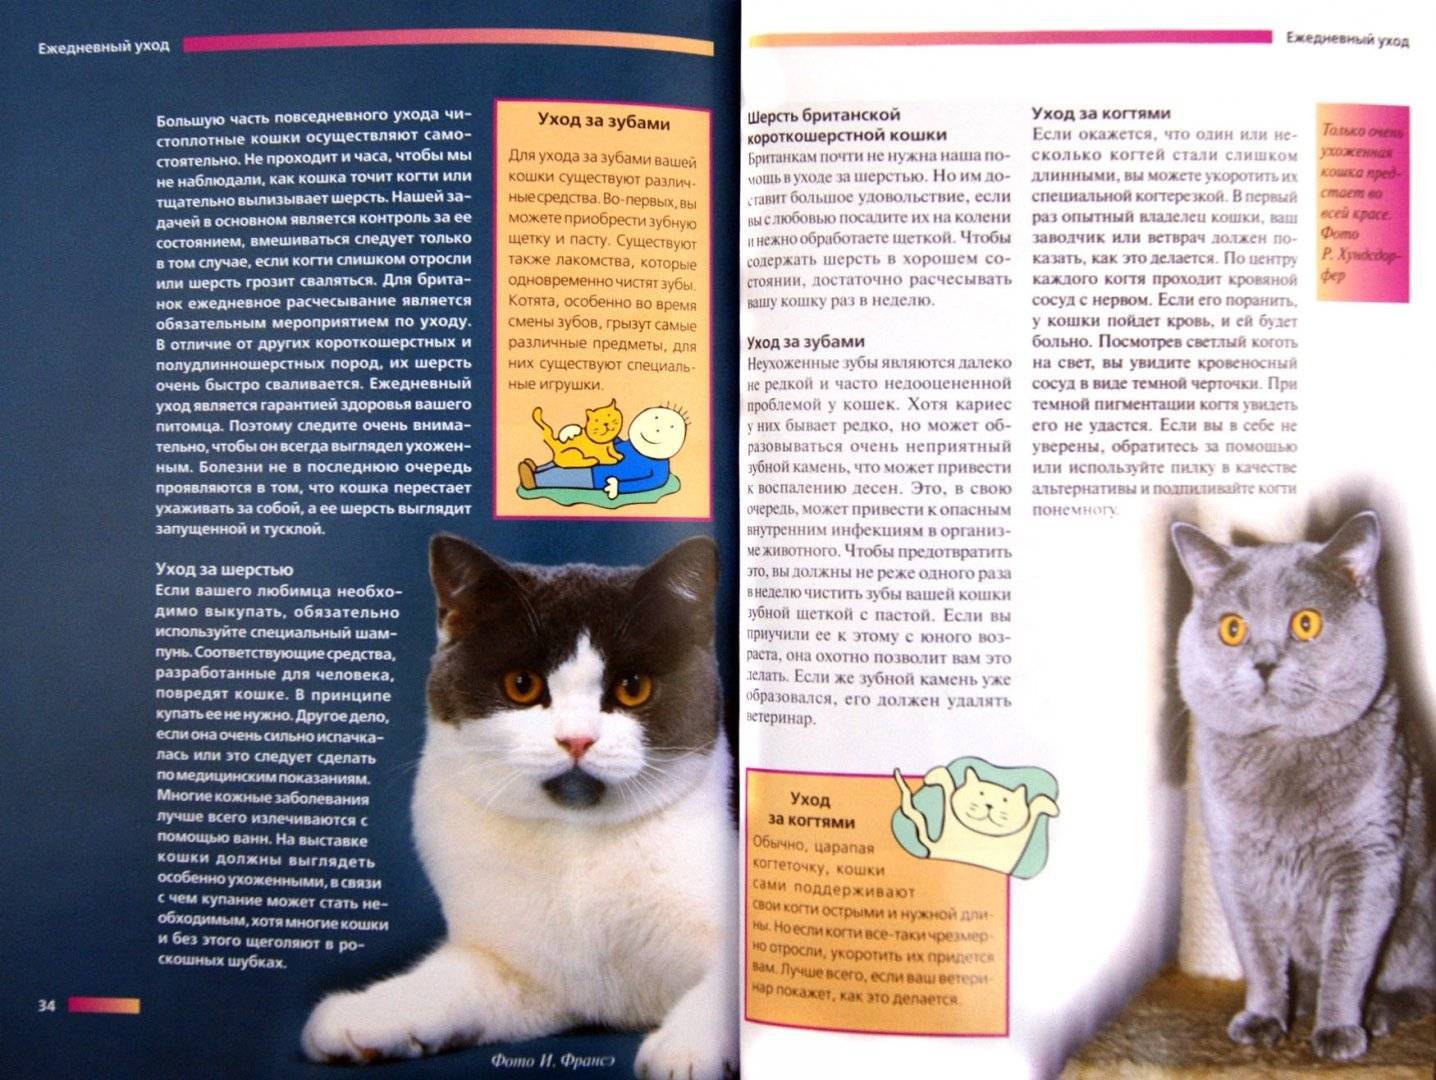 Норвежская лесная кошка: описание внешности и характера, уход за питомцем и его содержание, выбор котёнка, отзывы владельцев, фото кота